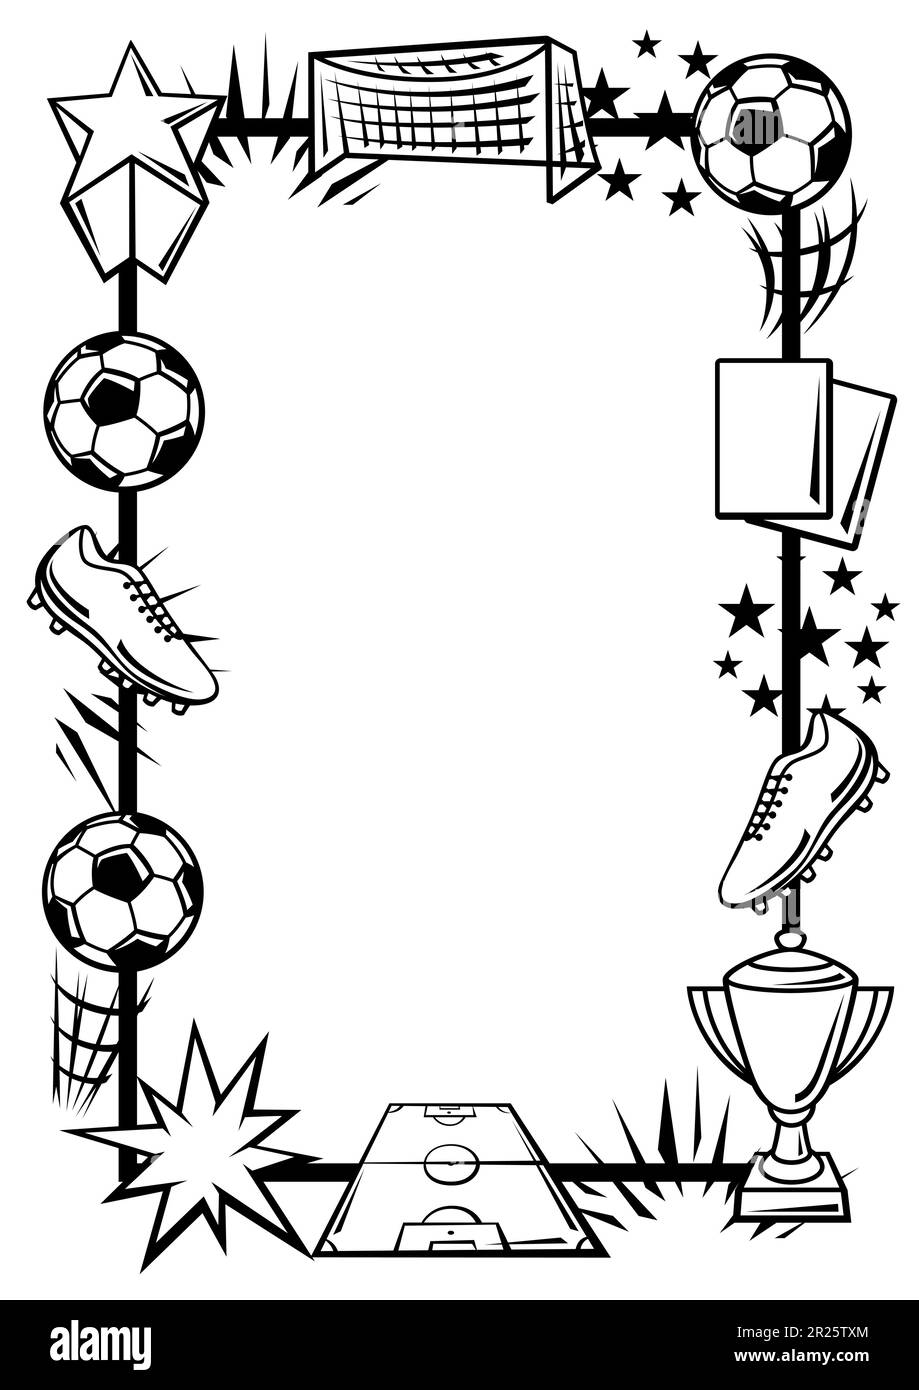 Hintergrund mit Fußballsymbolen. Fußballverein-Illustration. Stock Vektor